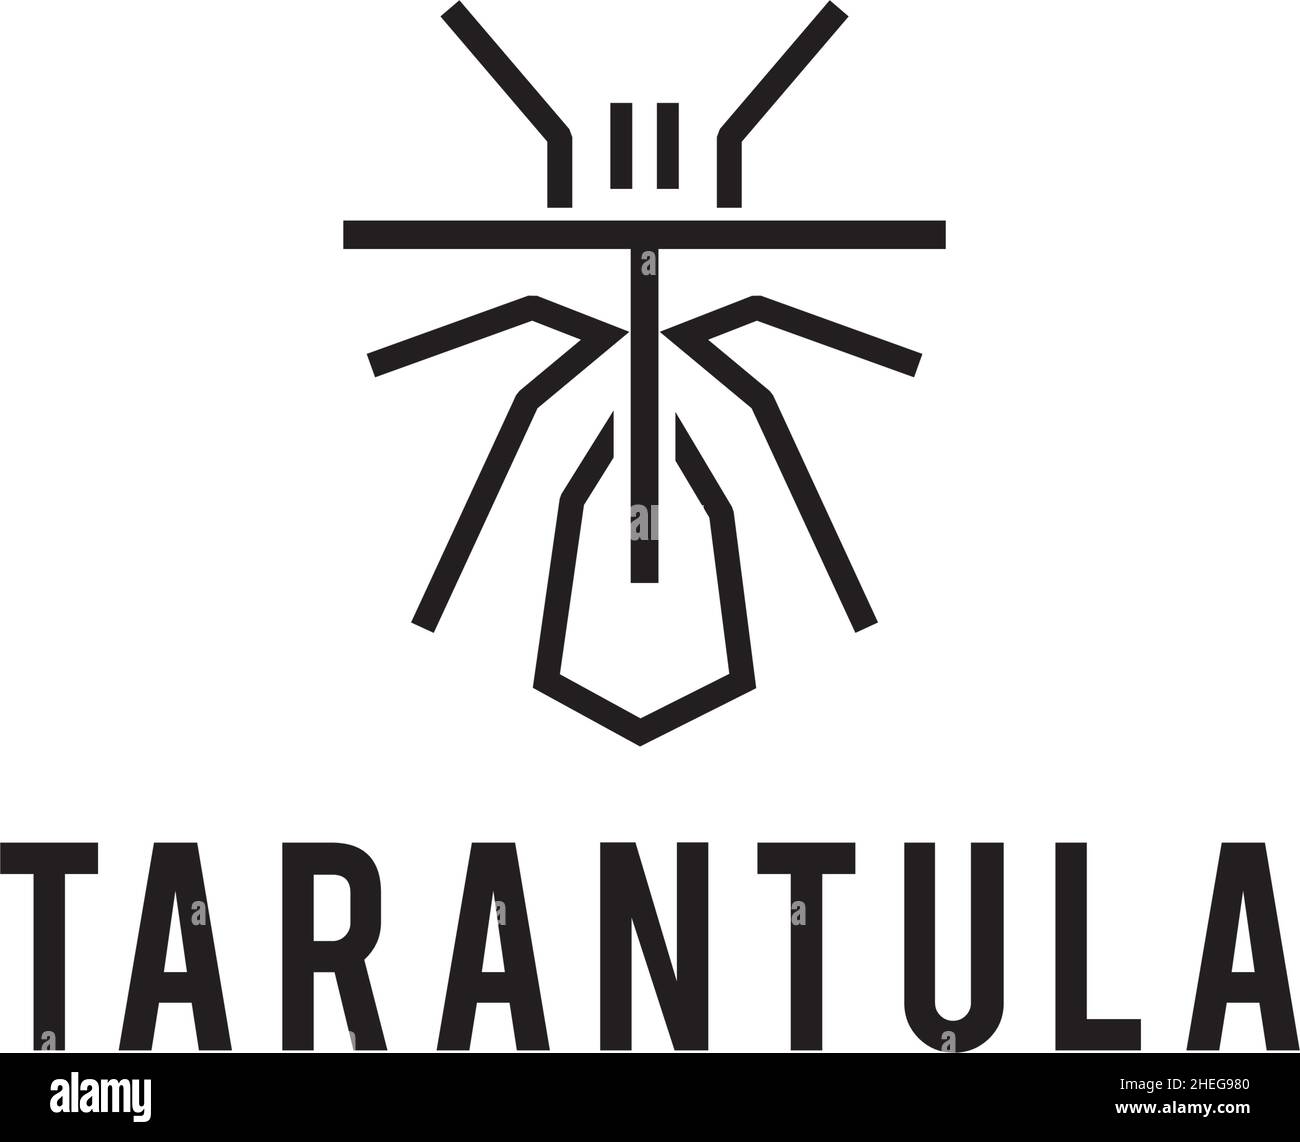 Outline art tarantula vector logo design Stock Vector